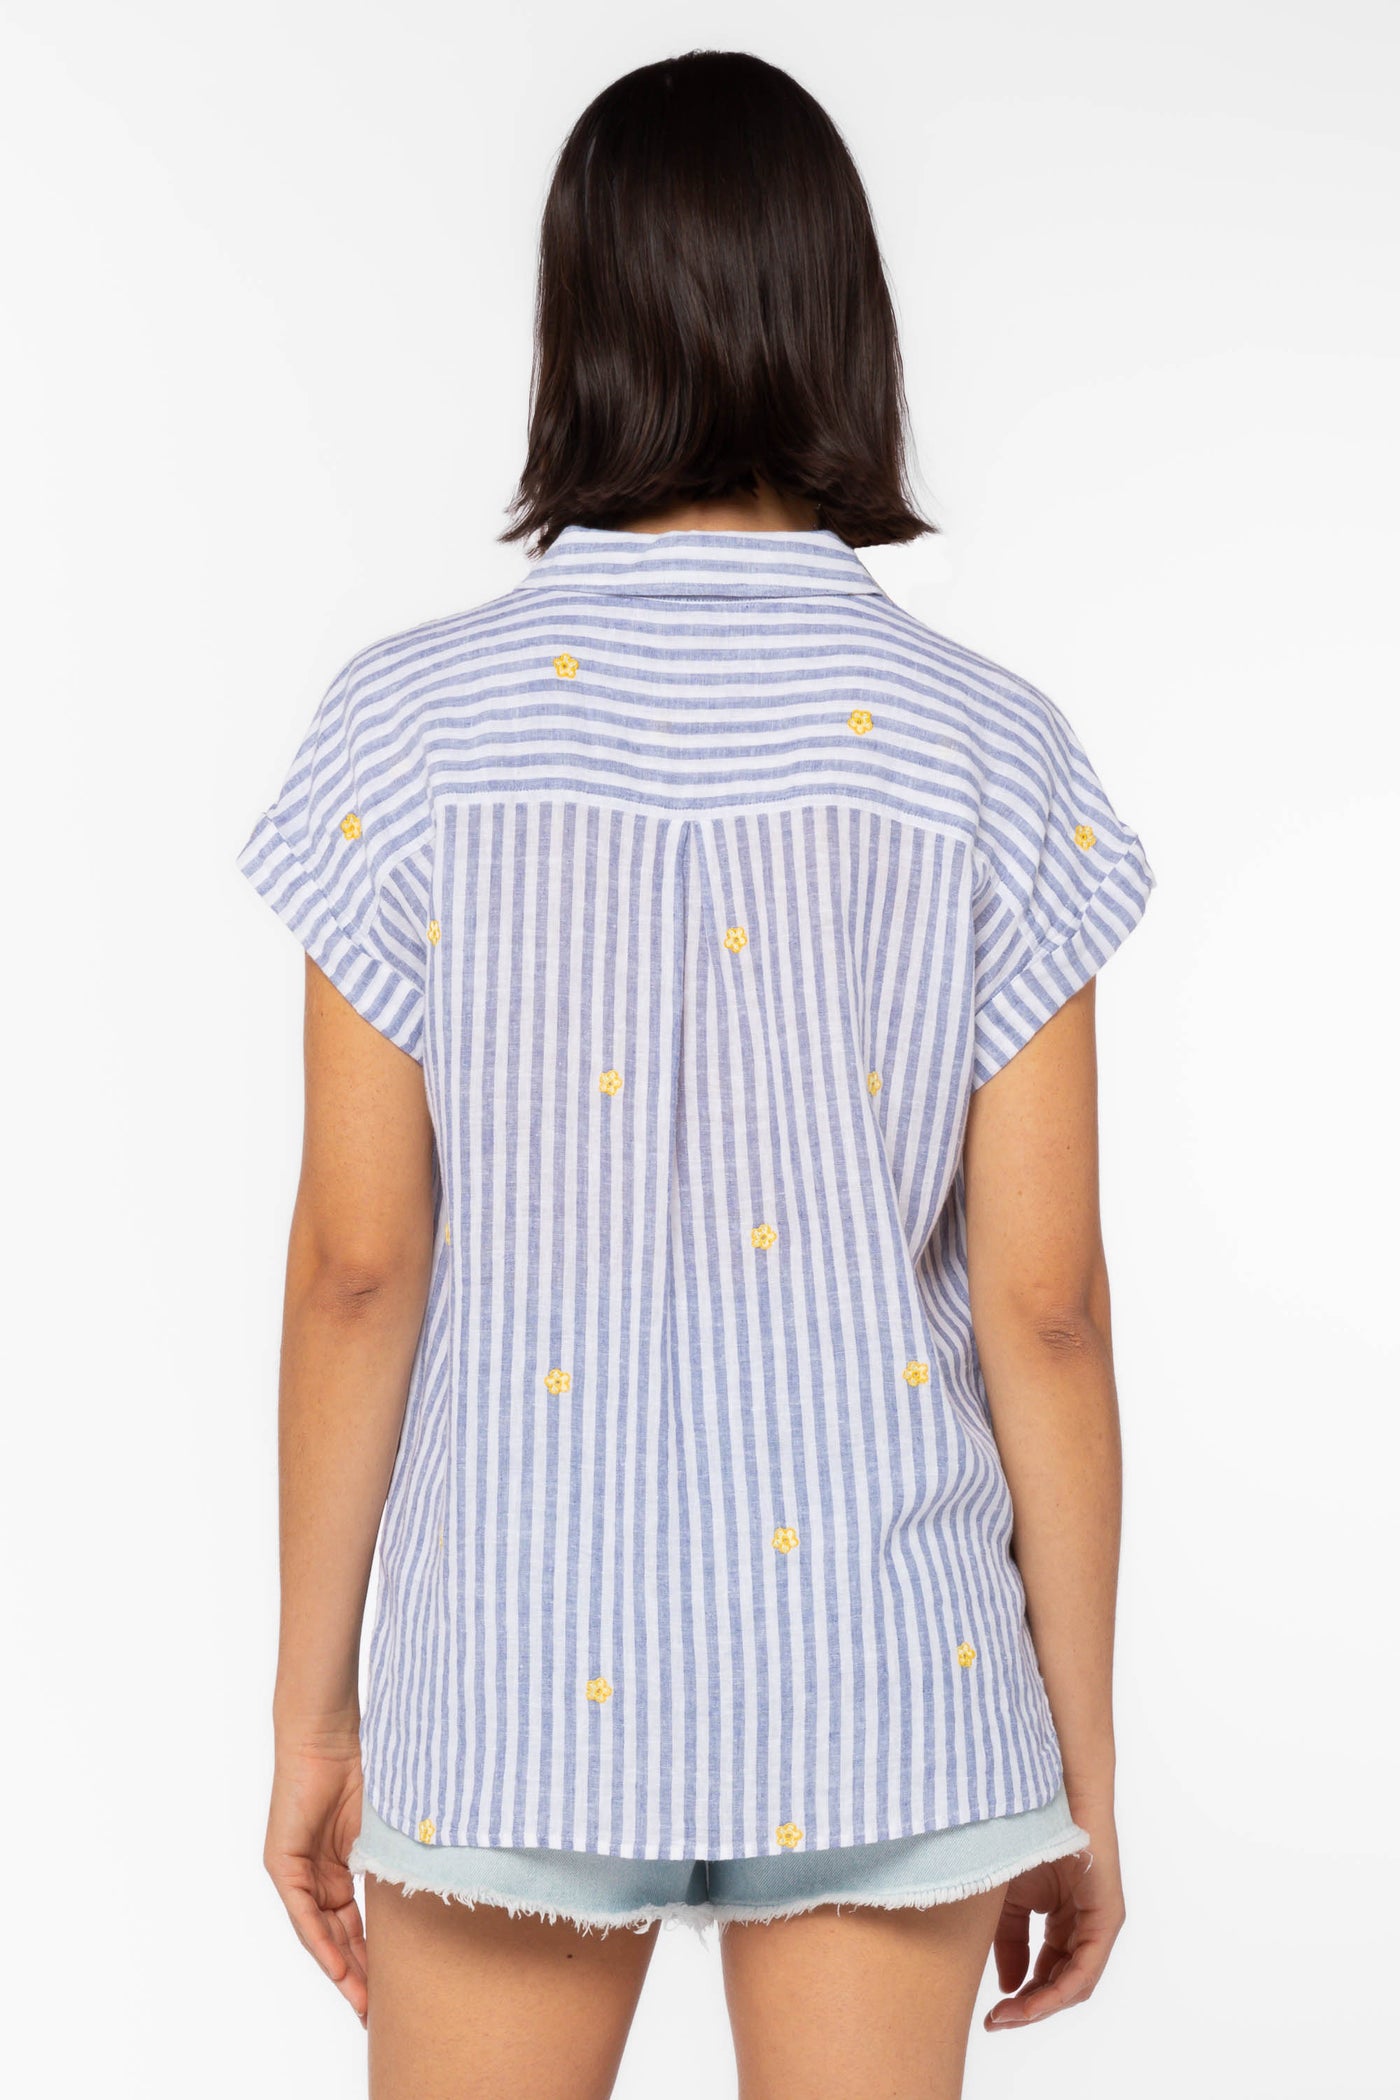 Ilene Blue Stripe Shirt - Tops - Velvet Heart Clothing